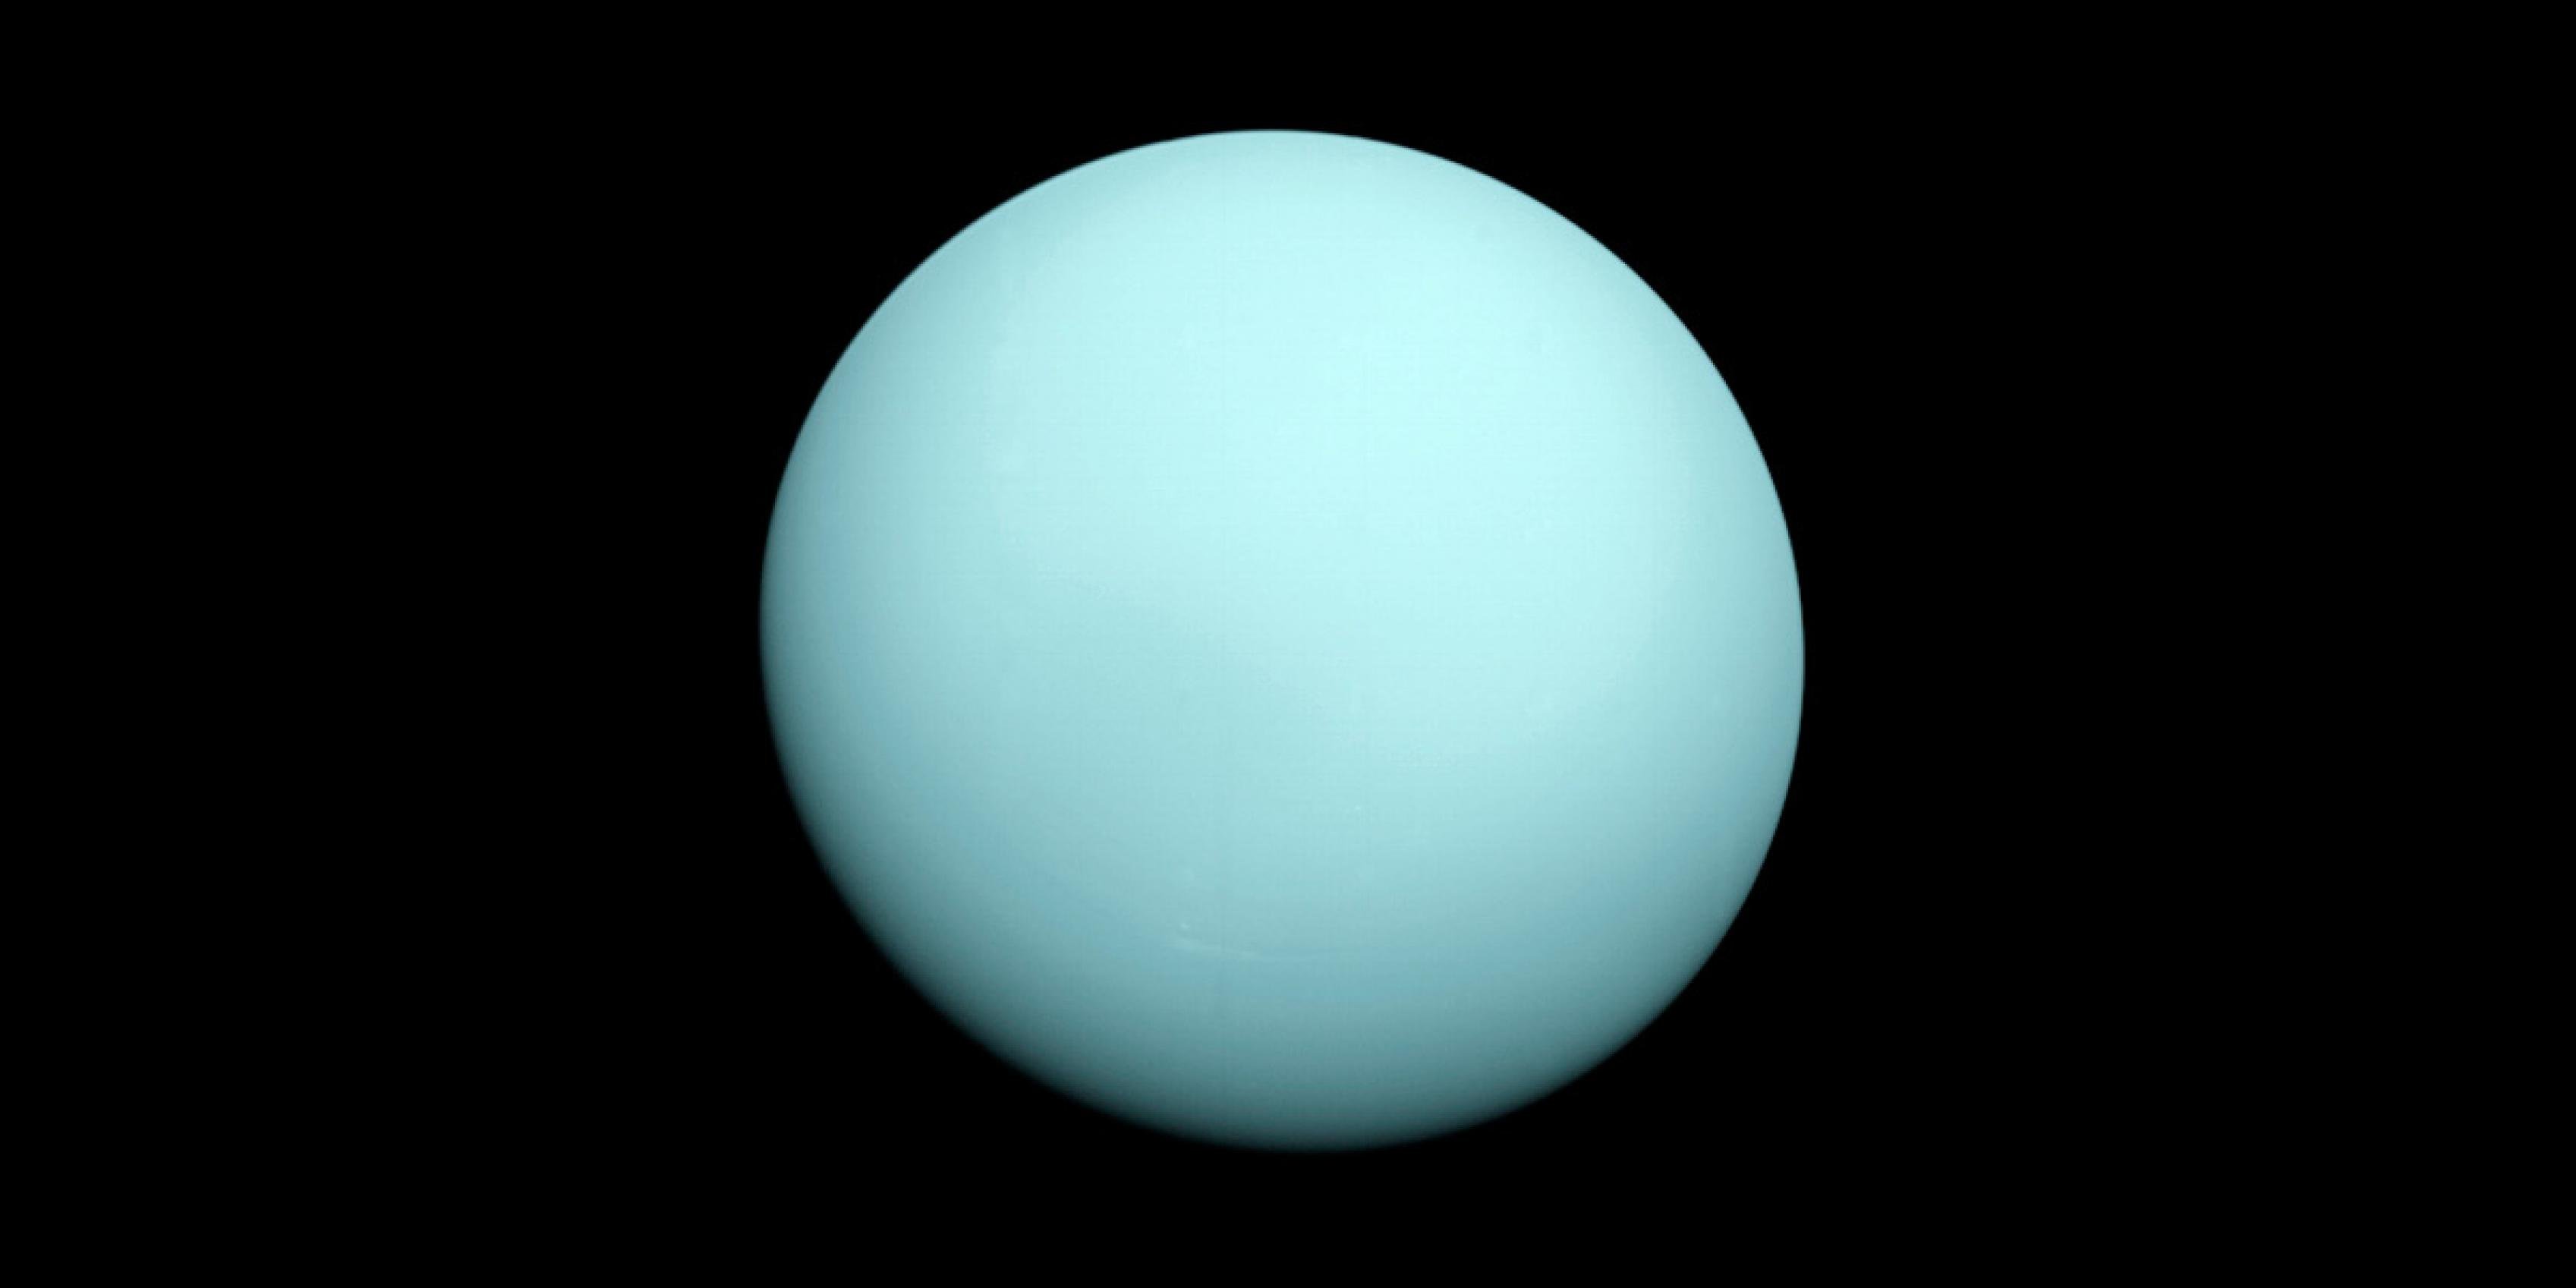 Uranus, aufgenommen beim Vorbeiflug der NASA-Raumsonde Voyager 2 am 24. Januar 1986. Voyager 2 war der bislang einzige irdische Besucher beim – nach Jupiter und Saturn – drittgrößten Gasplaneten des Sonnensystems. Die 1977 gestartete Raumsonde passierte den Planeten am 24. Januar 1986, als auch diese Aufnahme entstand. Sie nahm Kurs auf Neptun, an dem sie dreieinhalb Jahre später, im August 1989, vorbeiflog.